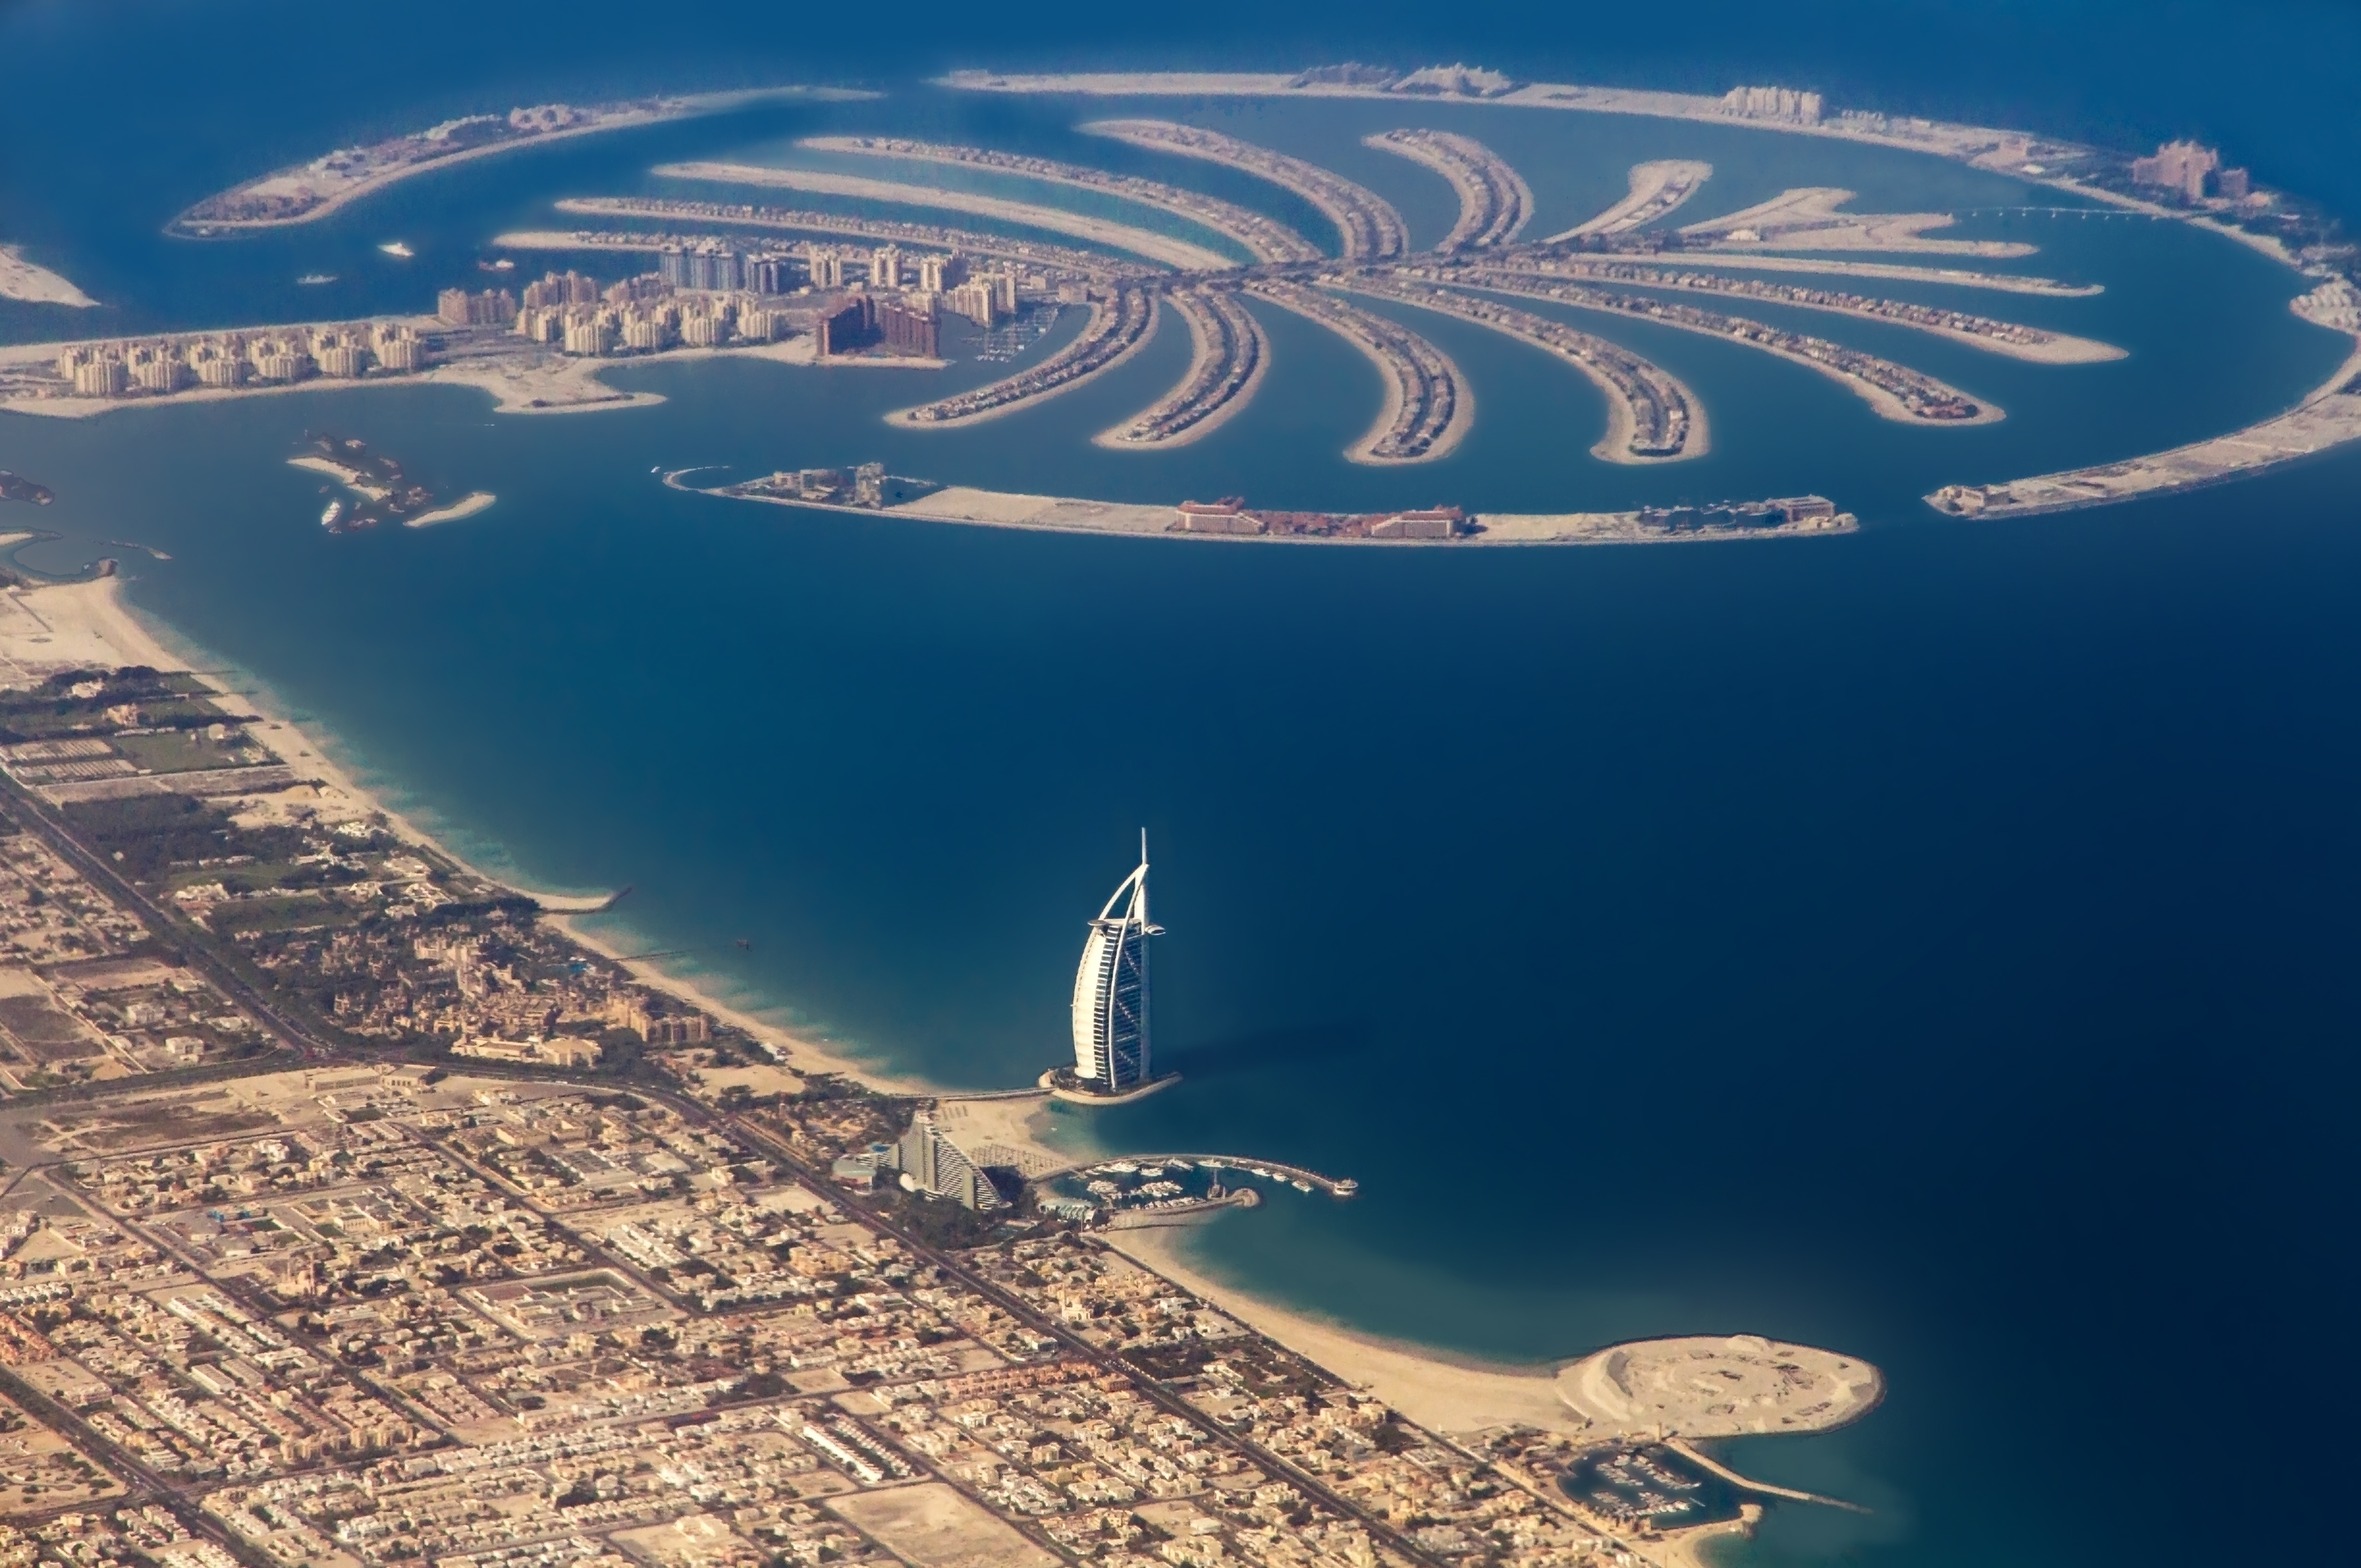 Palm Jumeirah | Dubai, UAE